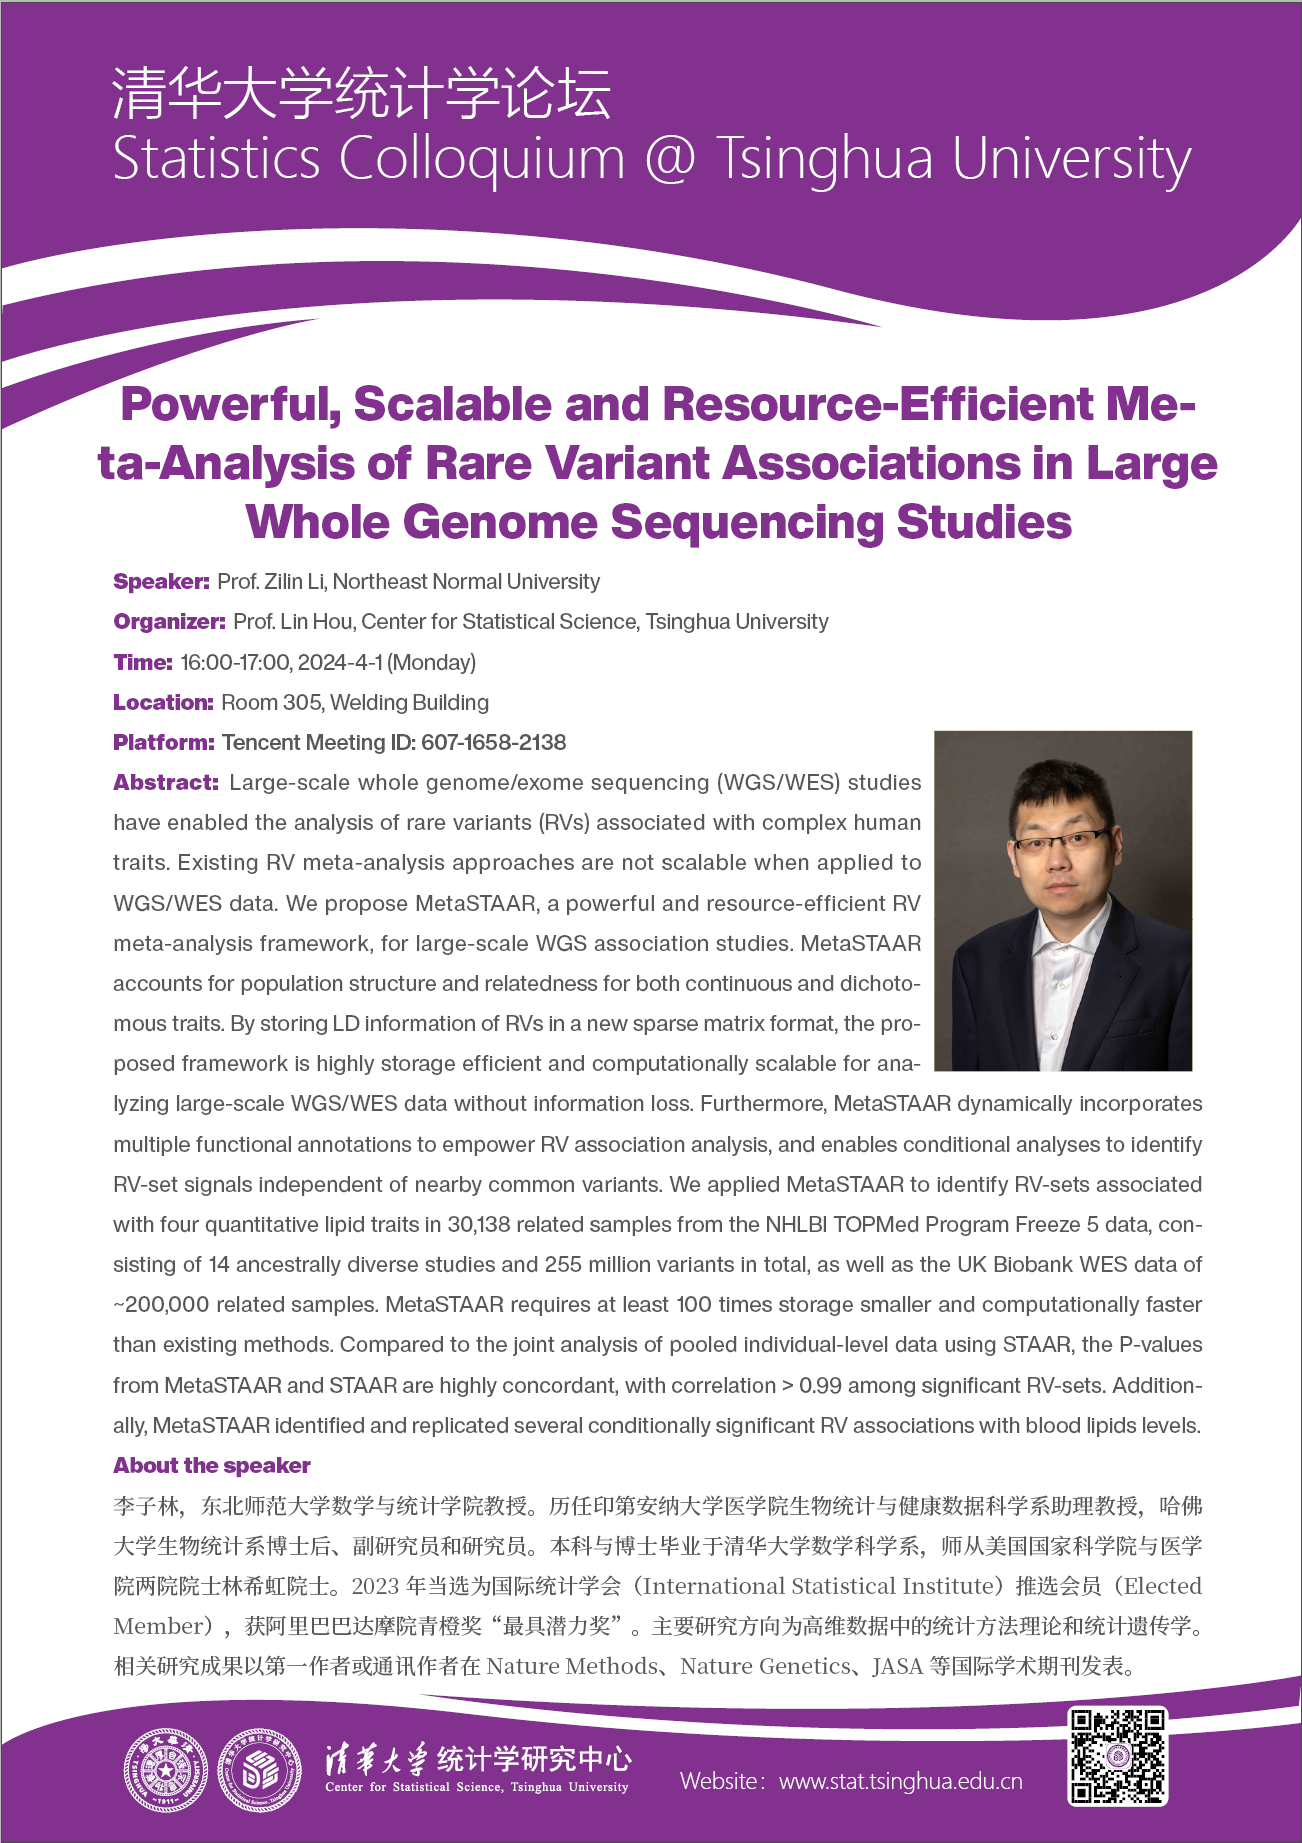 【统计学论坛】Powerful, Scalable and Resource-efficient Meta-analysis of Rare Variant Associations in Large Whole Genome Sequencing Studies